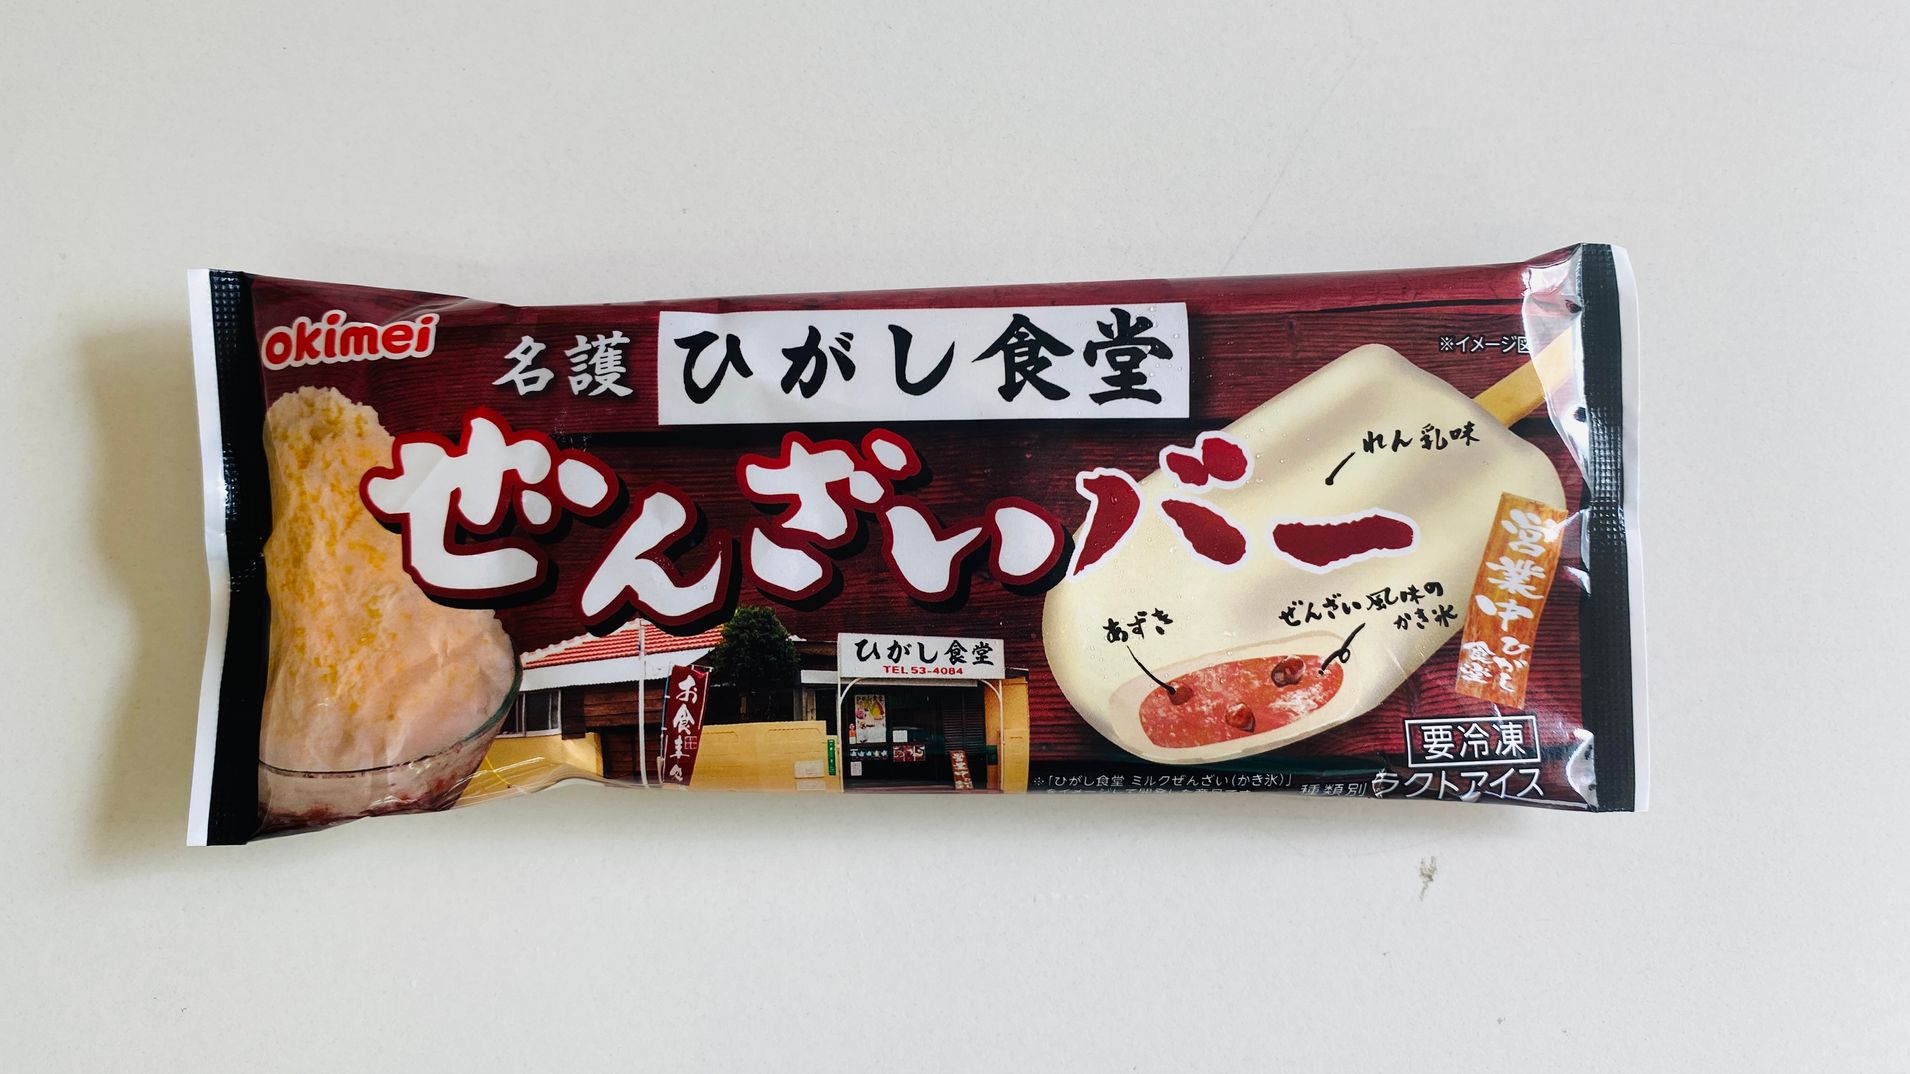 아이들이 좋아하는 오키나와 특산 아이스크림 맛과 특징 비교!22